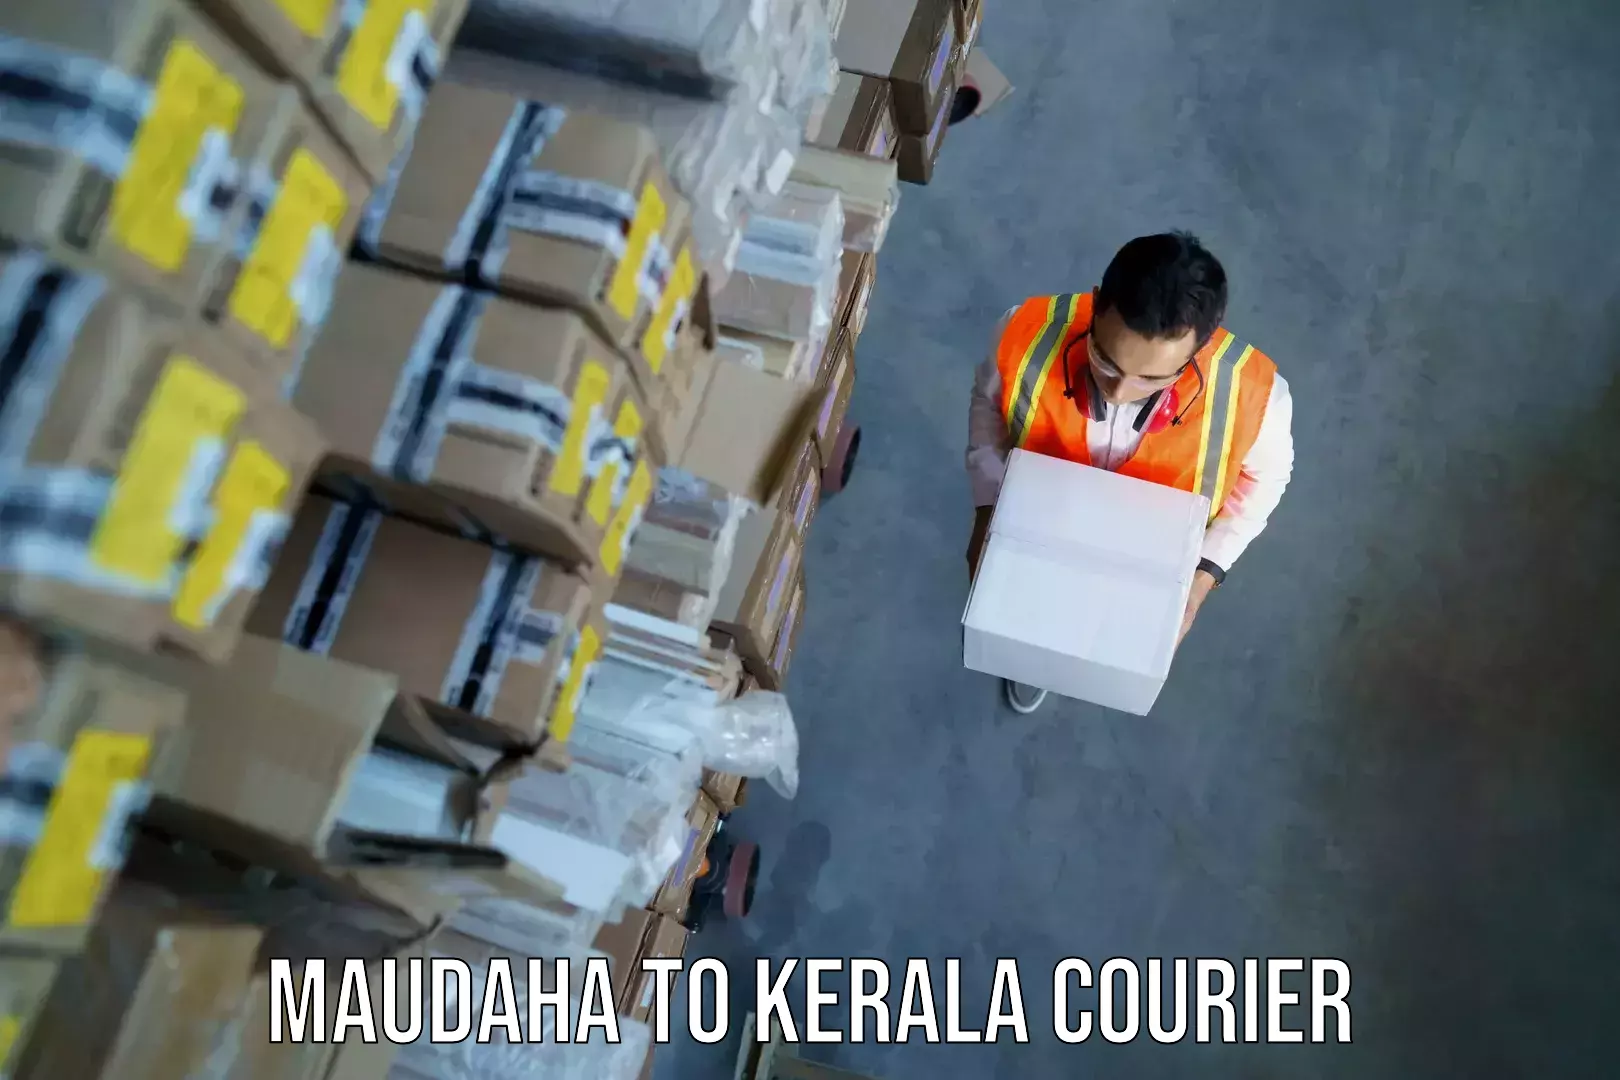 Personal effects shipping in Maudaha to Cochin Port Kochi